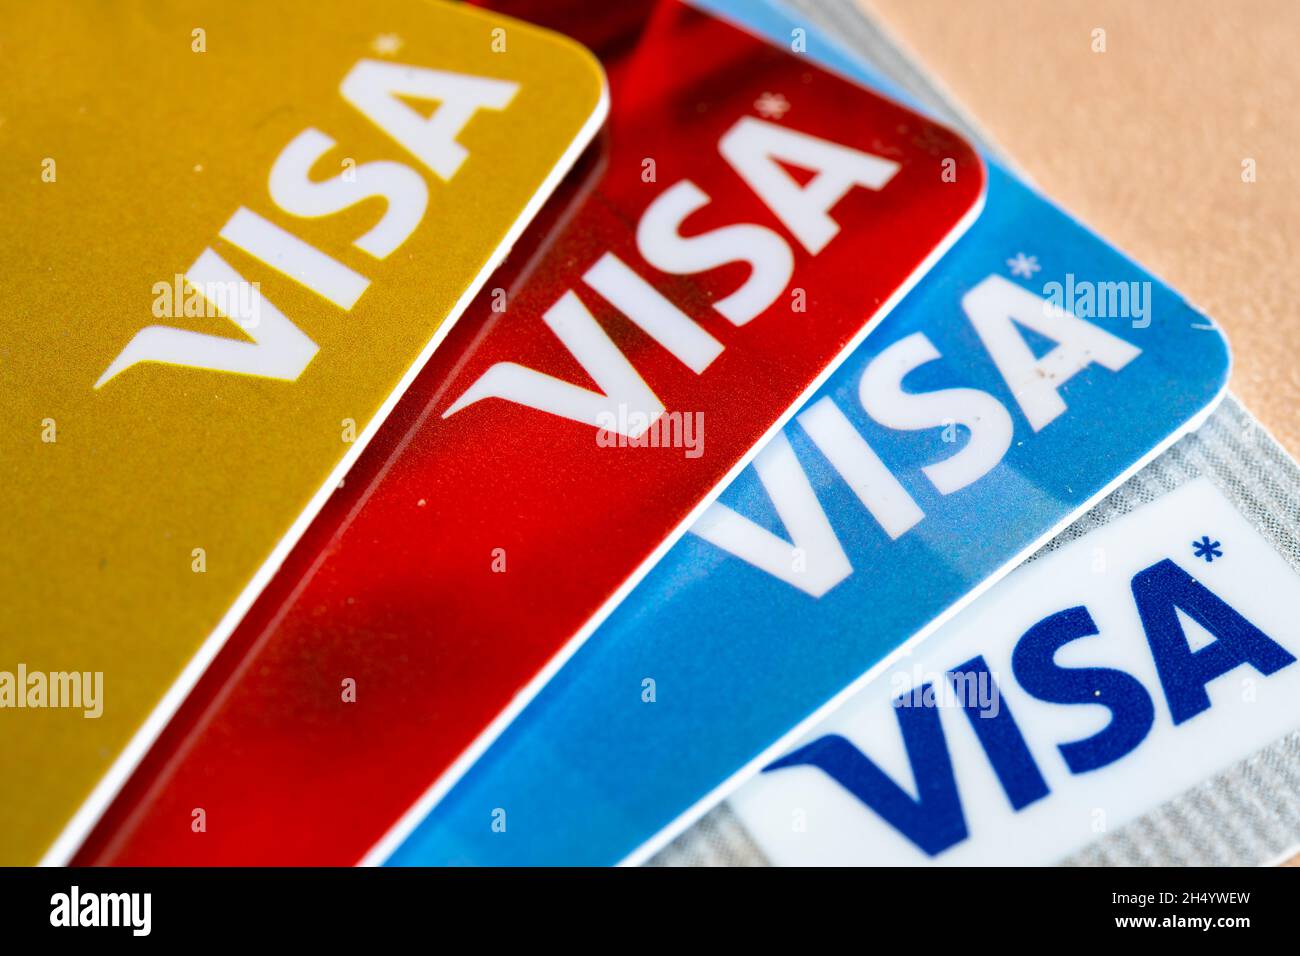 Gros plan de diverses cartes de crédit Visa montrant le logo de la société financière.Nov. 5, 2021 Banque D'Images